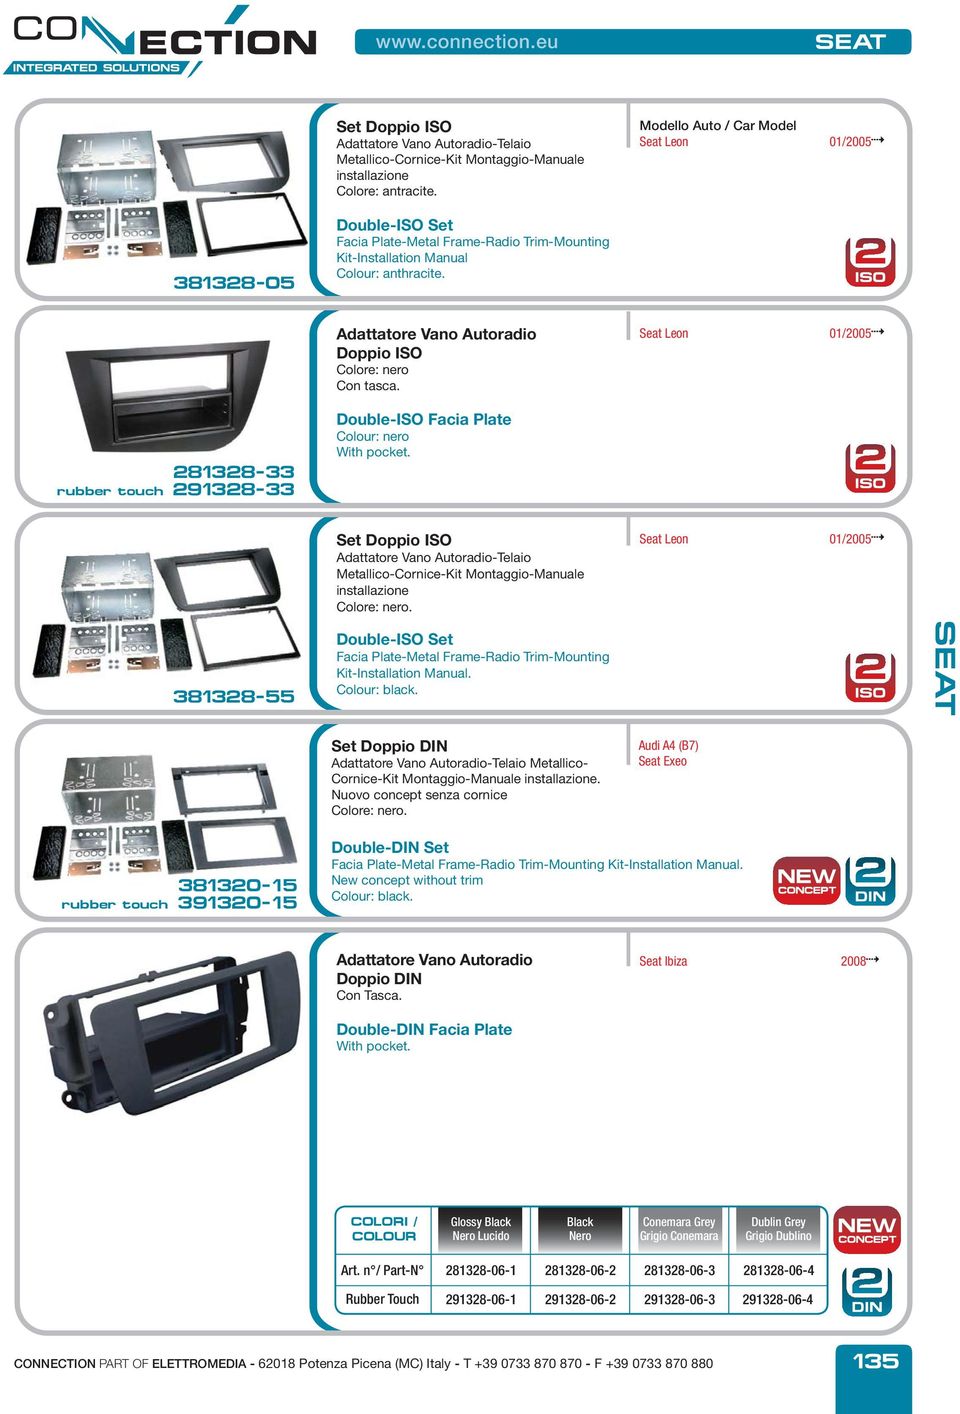 Doppio ISO 281328-33 rubber touch 291328-33 Colour: nero Set Doppio ISO -Telaio Metallico-Cornice-Kit Montaggio-Manuale installazione.